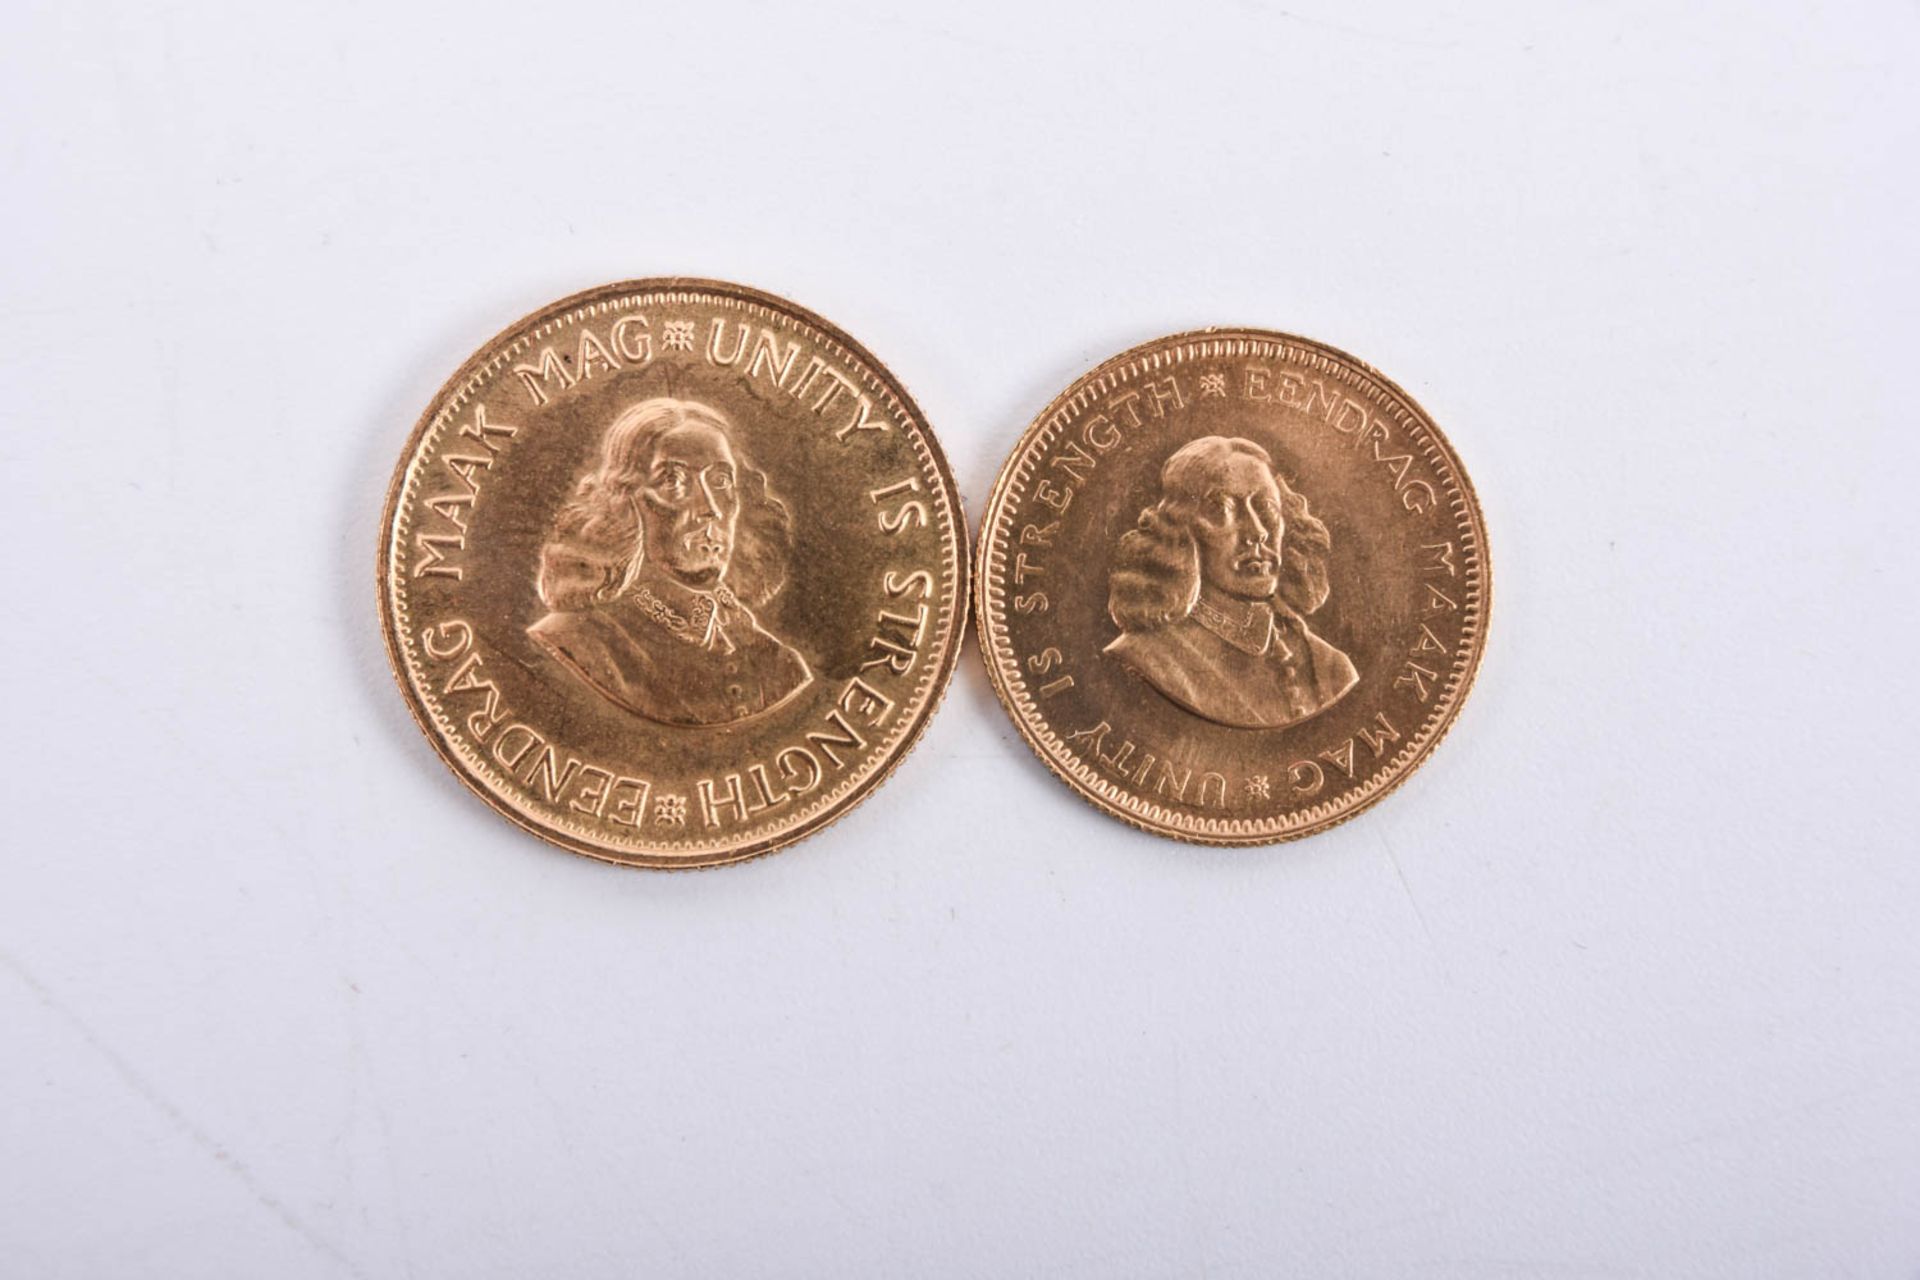 Südafrika 2 Rand 1976 Goldmünze u. Südafrika 1 Rand 1969 Goldmünze - Bild 2 aus 3